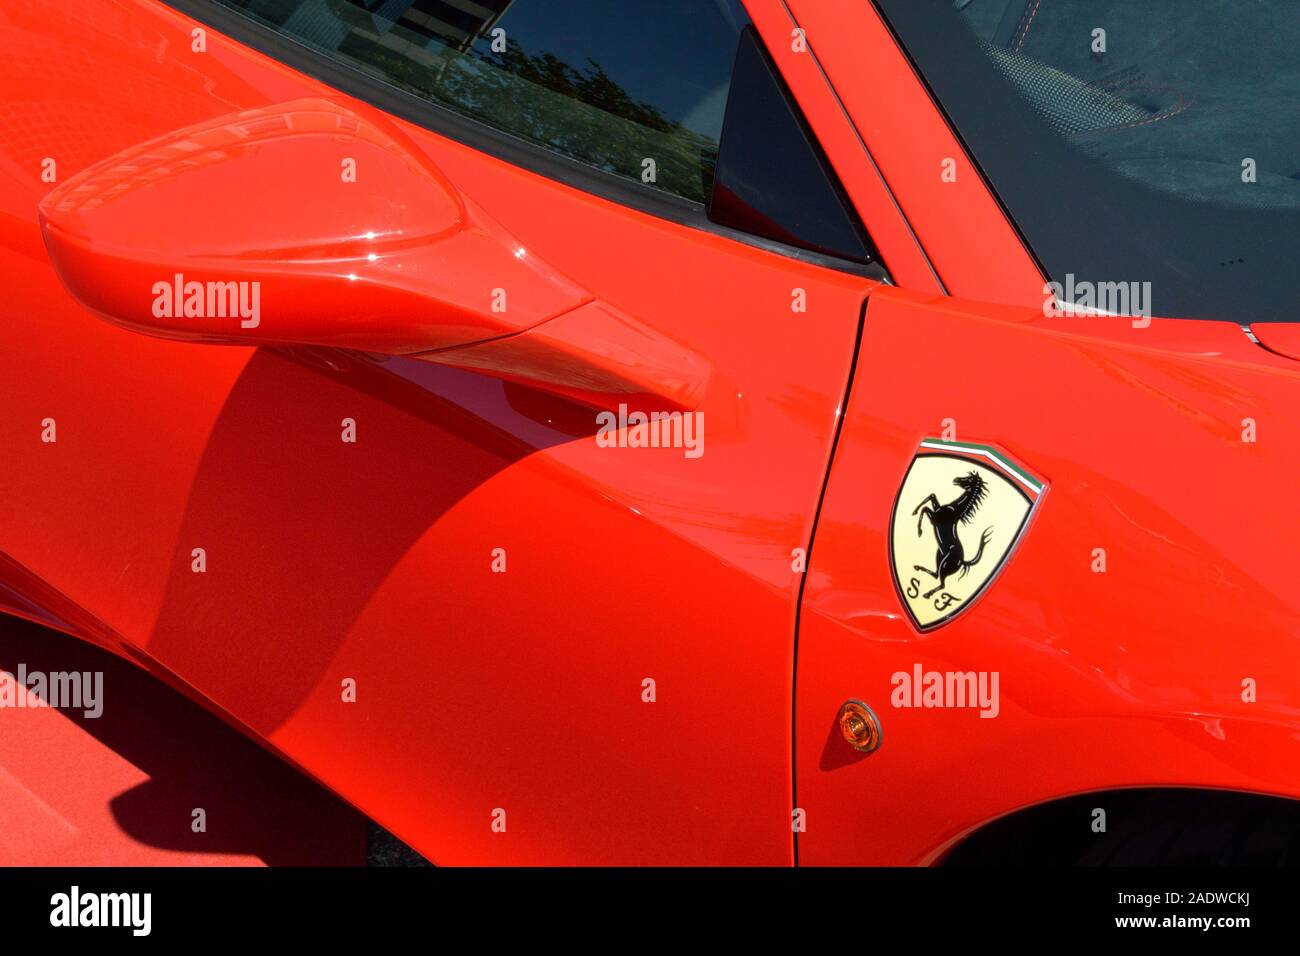 Il cavallino rampante cavallino rampante badge sulla Ferrari 458 Italia Speciale Foto Stock